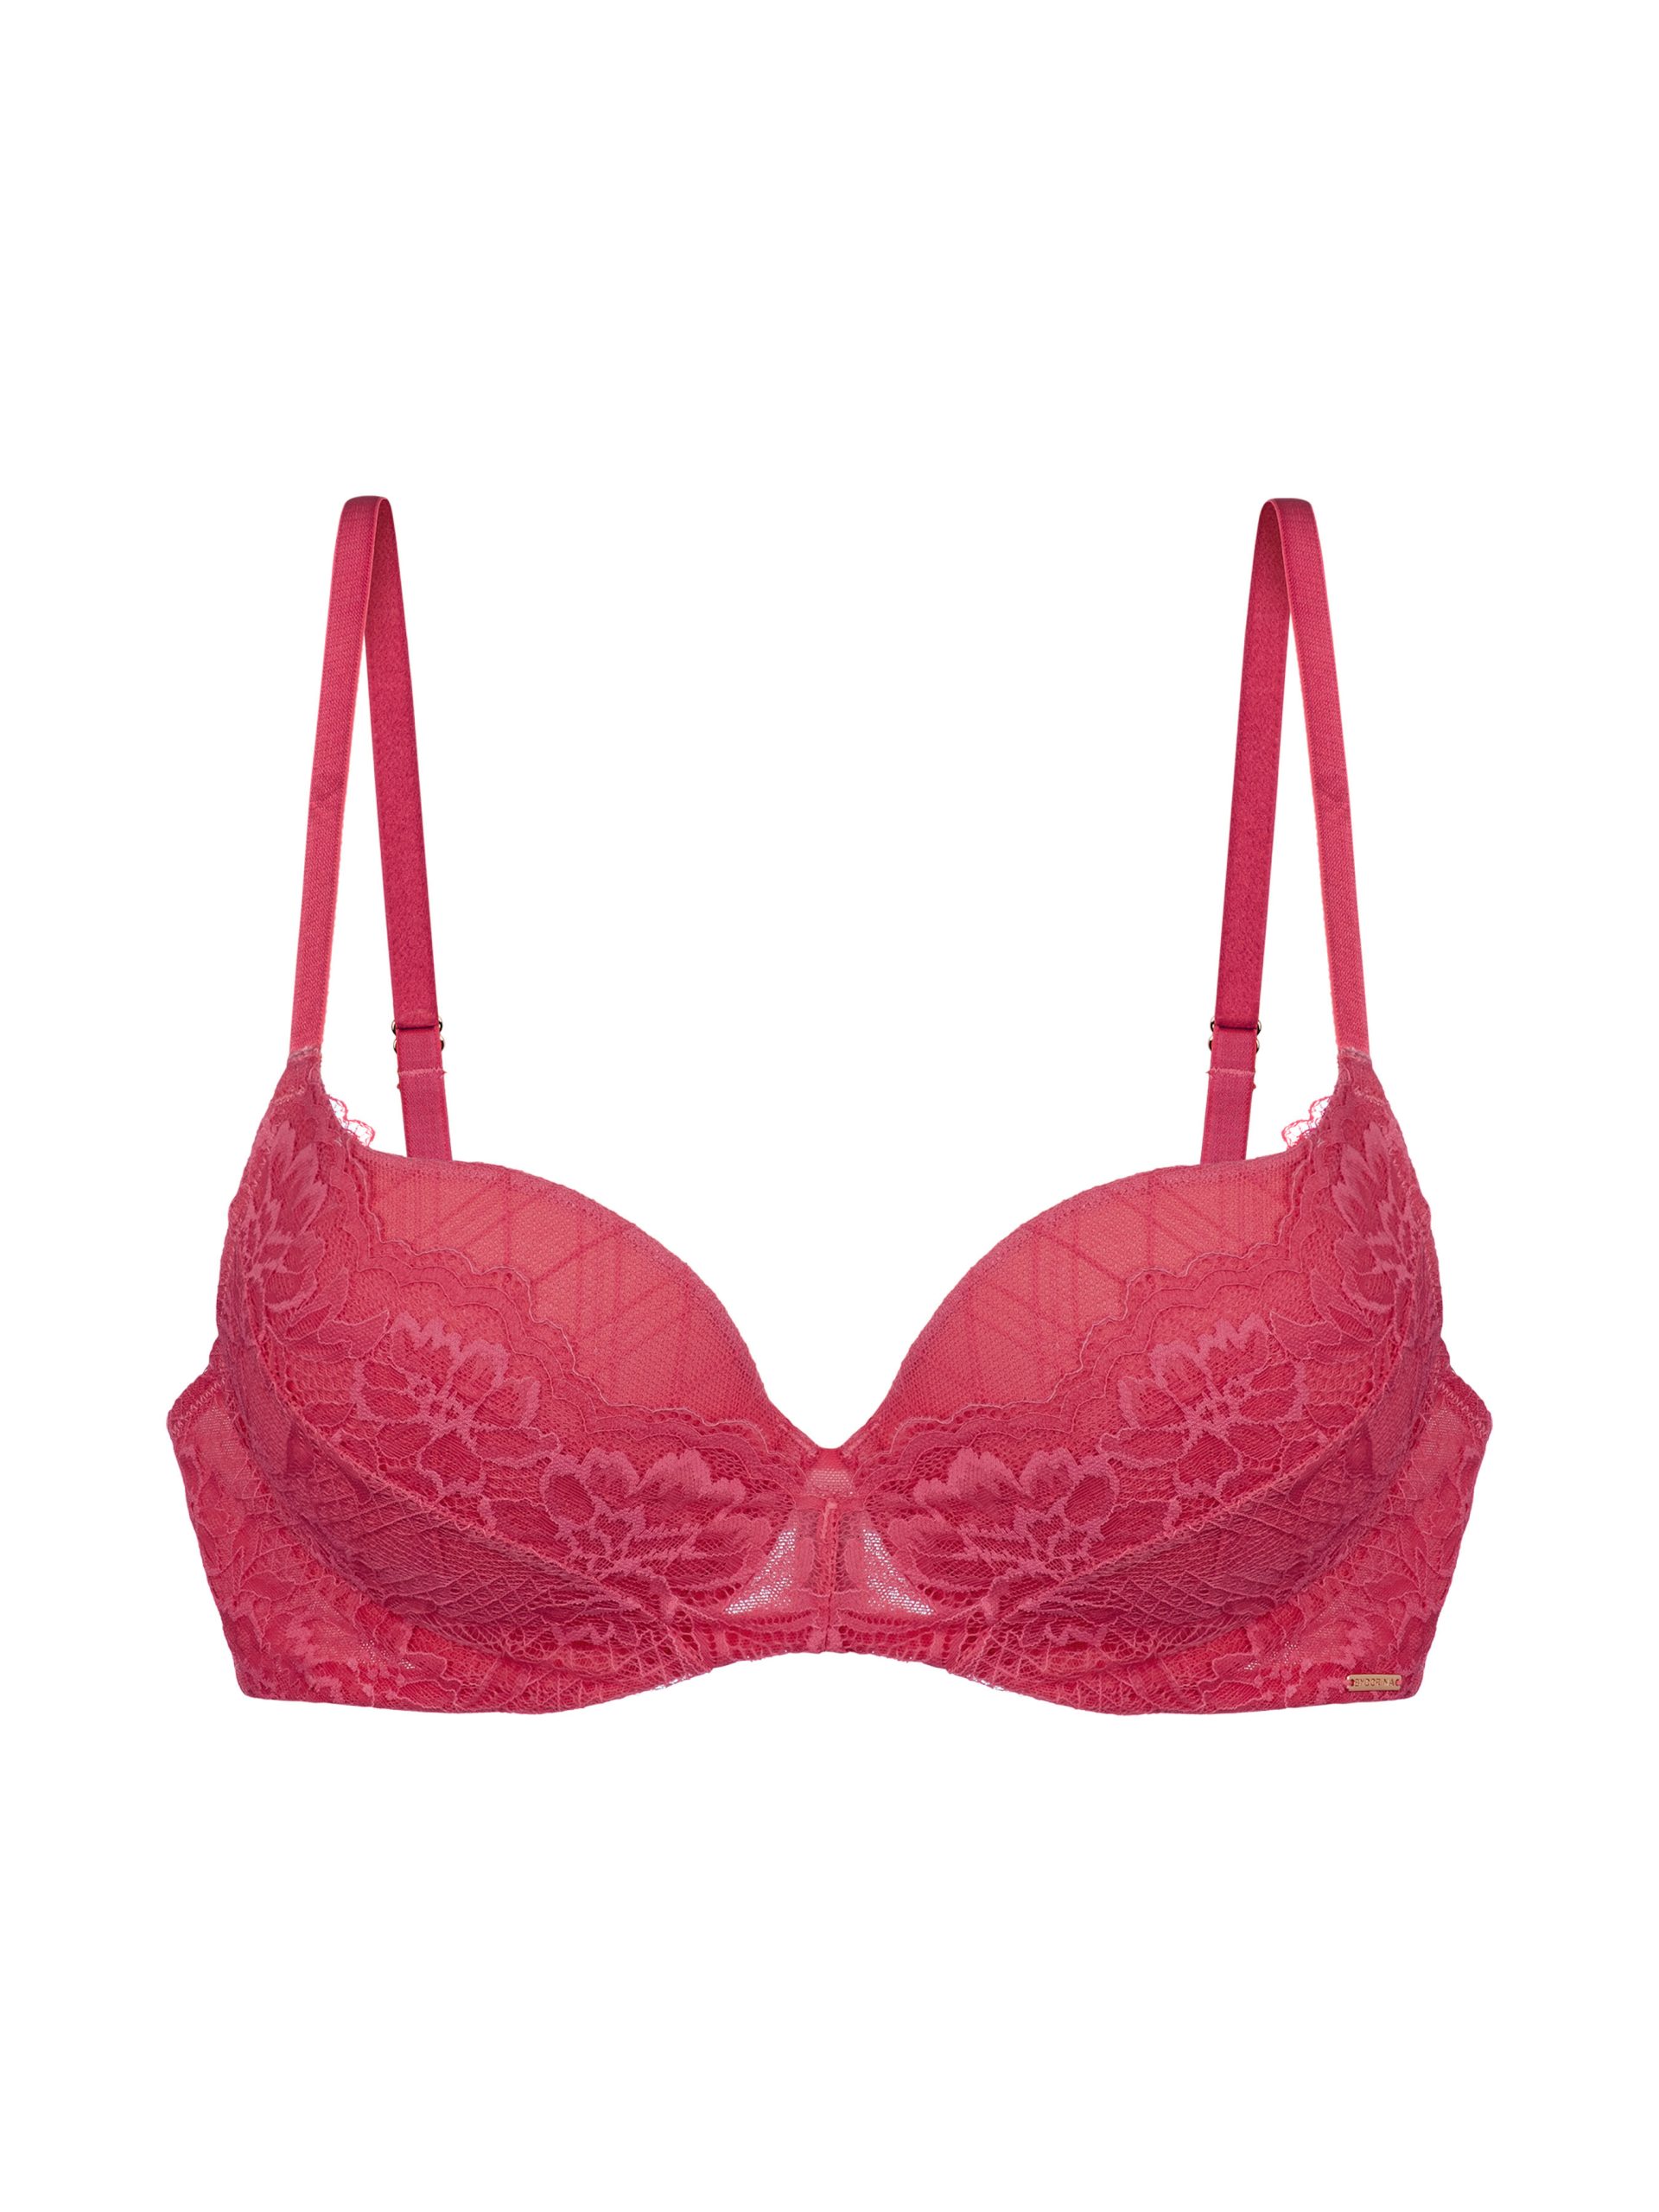 Dorina Alyssa daisy lace lightly padded demi bra in pink бюстгальтеры  V70002080Размер: US 34A купить по выгодной цене в интернет-магазине   с доставкой